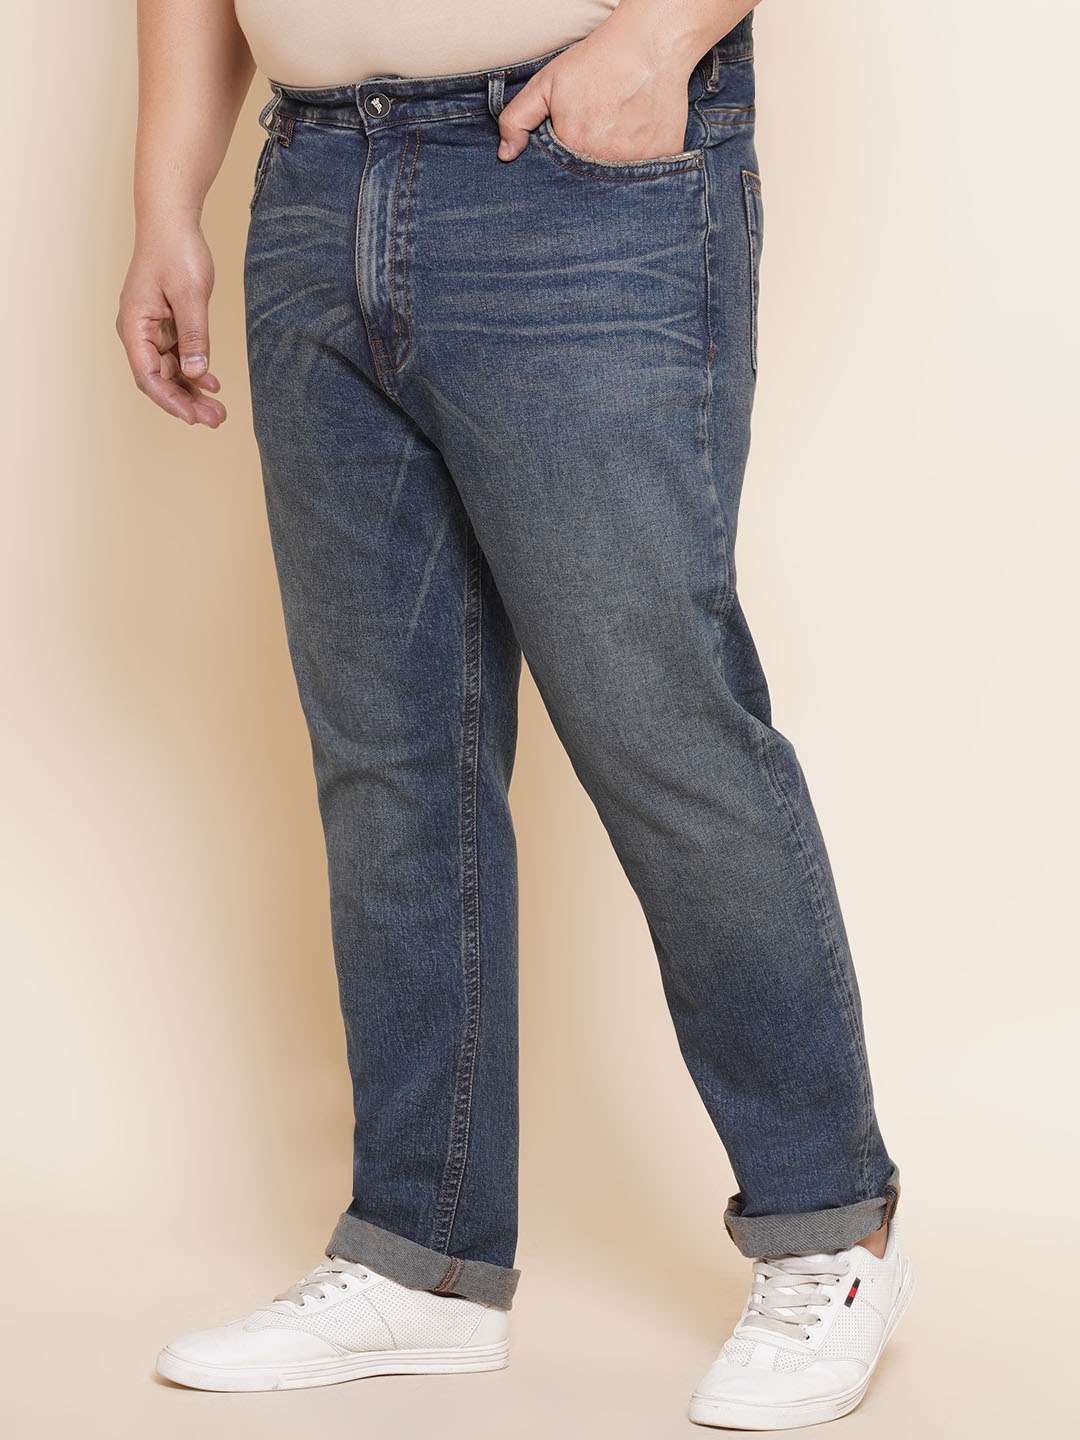 bottomwear/jeans/PJPJ6065/pjpj6065-4.jpg